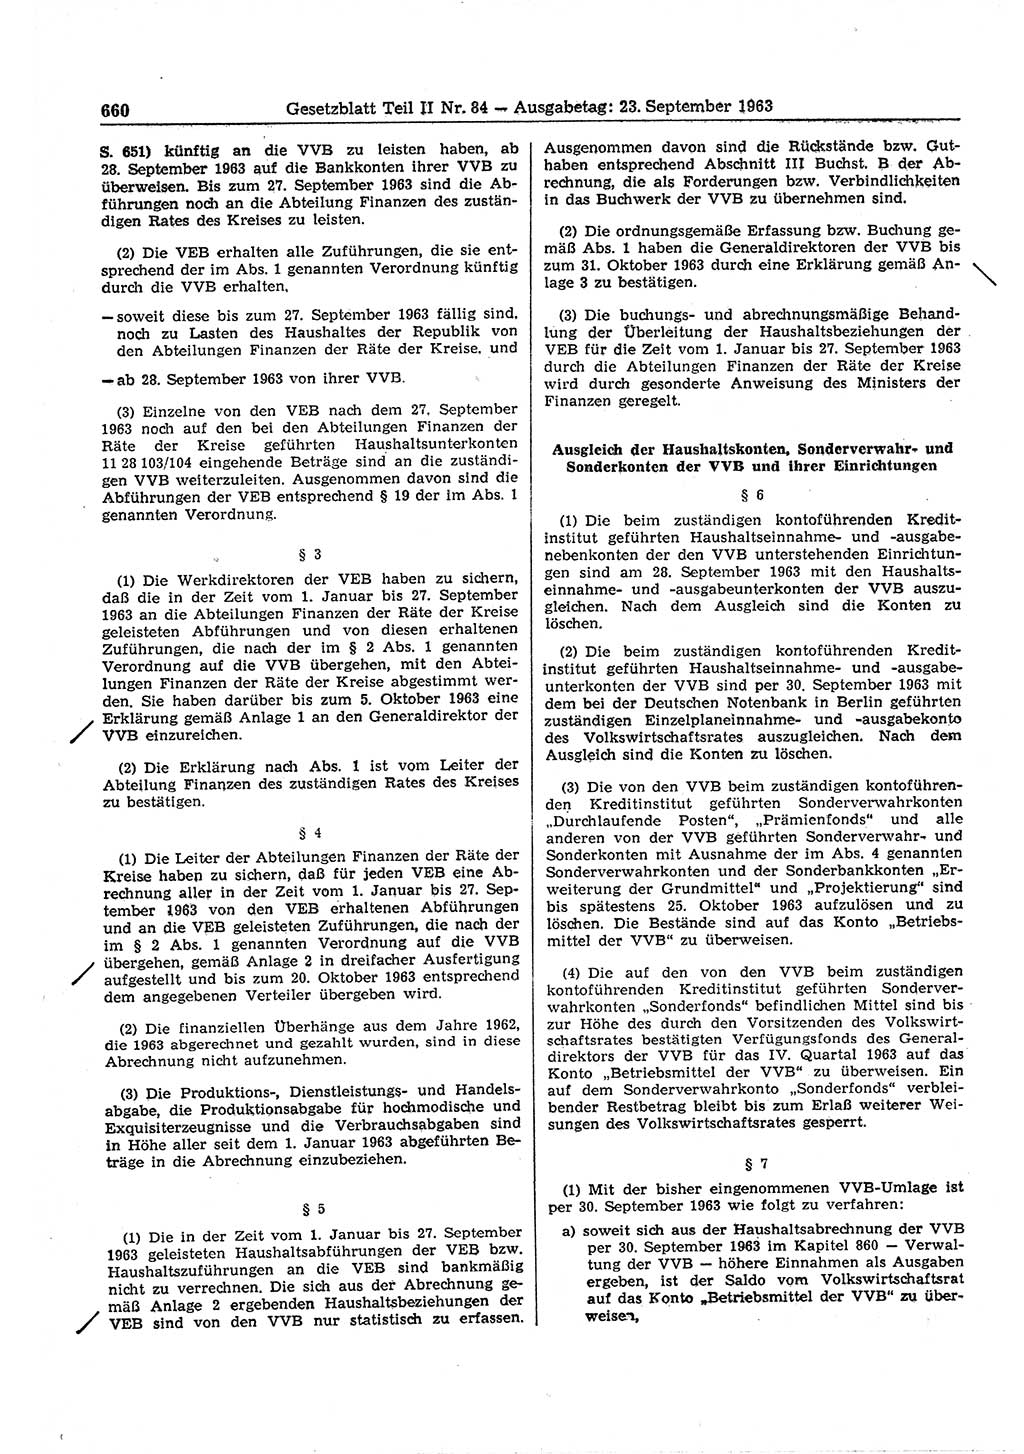 Gesetzblatt (GBl.) der Deutschen Demokratischen Republik (DDR) Teil ⅠⅠ 1963, Seite 660 (GBl. DDR ⅠⅠ 1963, S. 660)